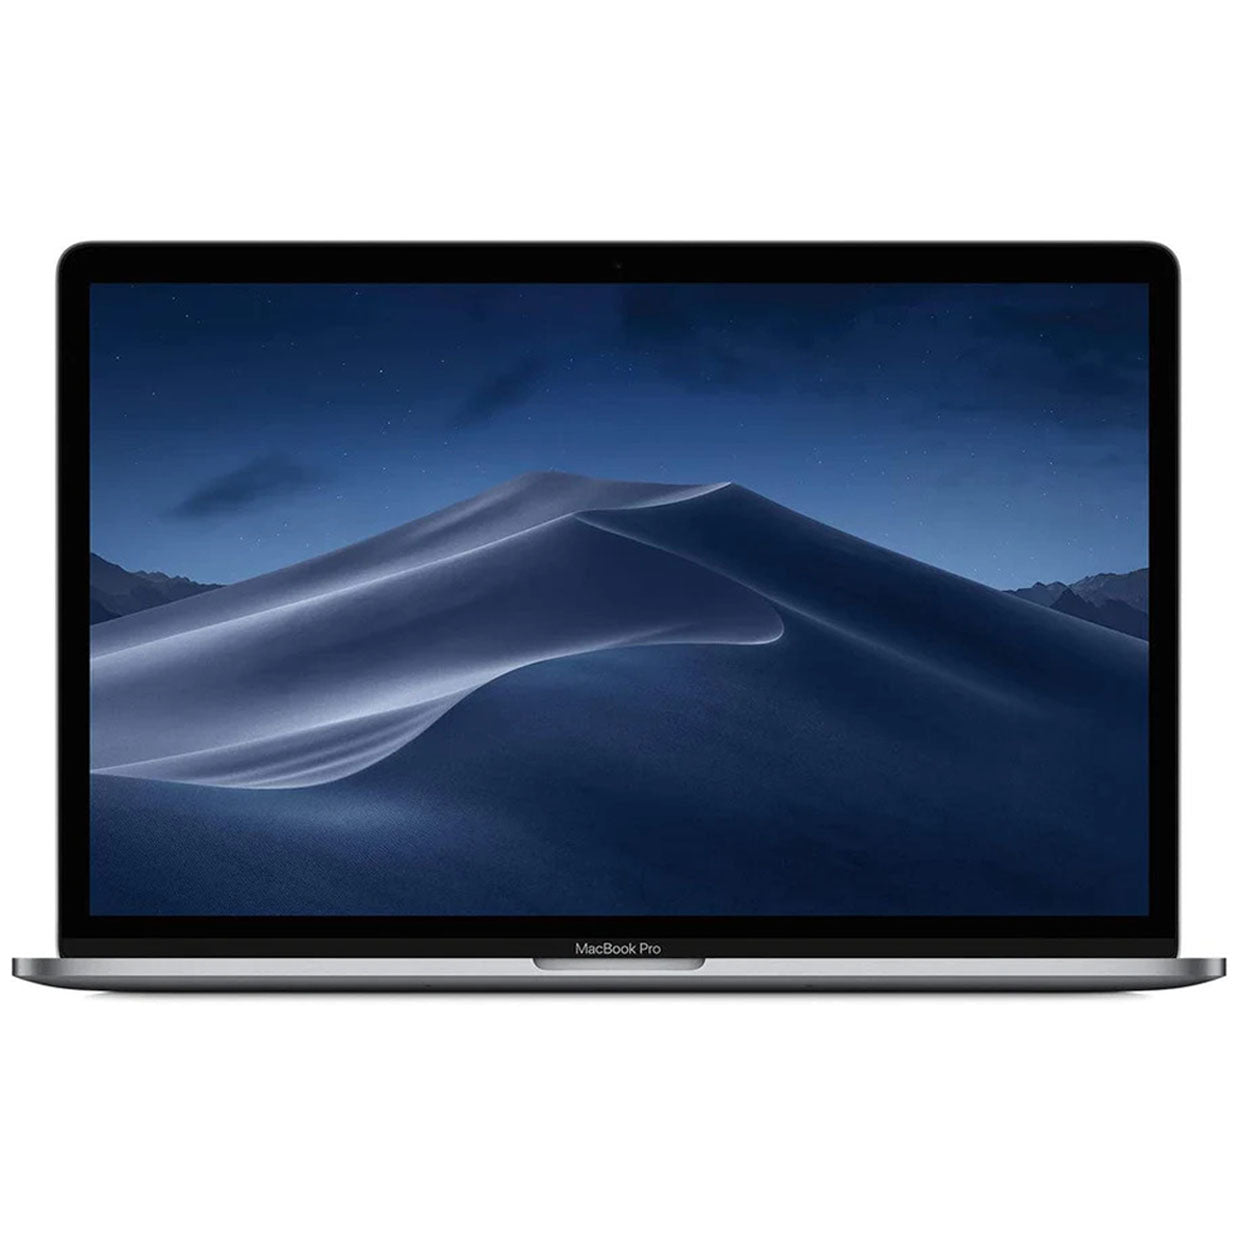 Apple MacBook Pro 2017 | A1707 MPTR2LL/A |Core i7 |16GB RAM |256GB SSD